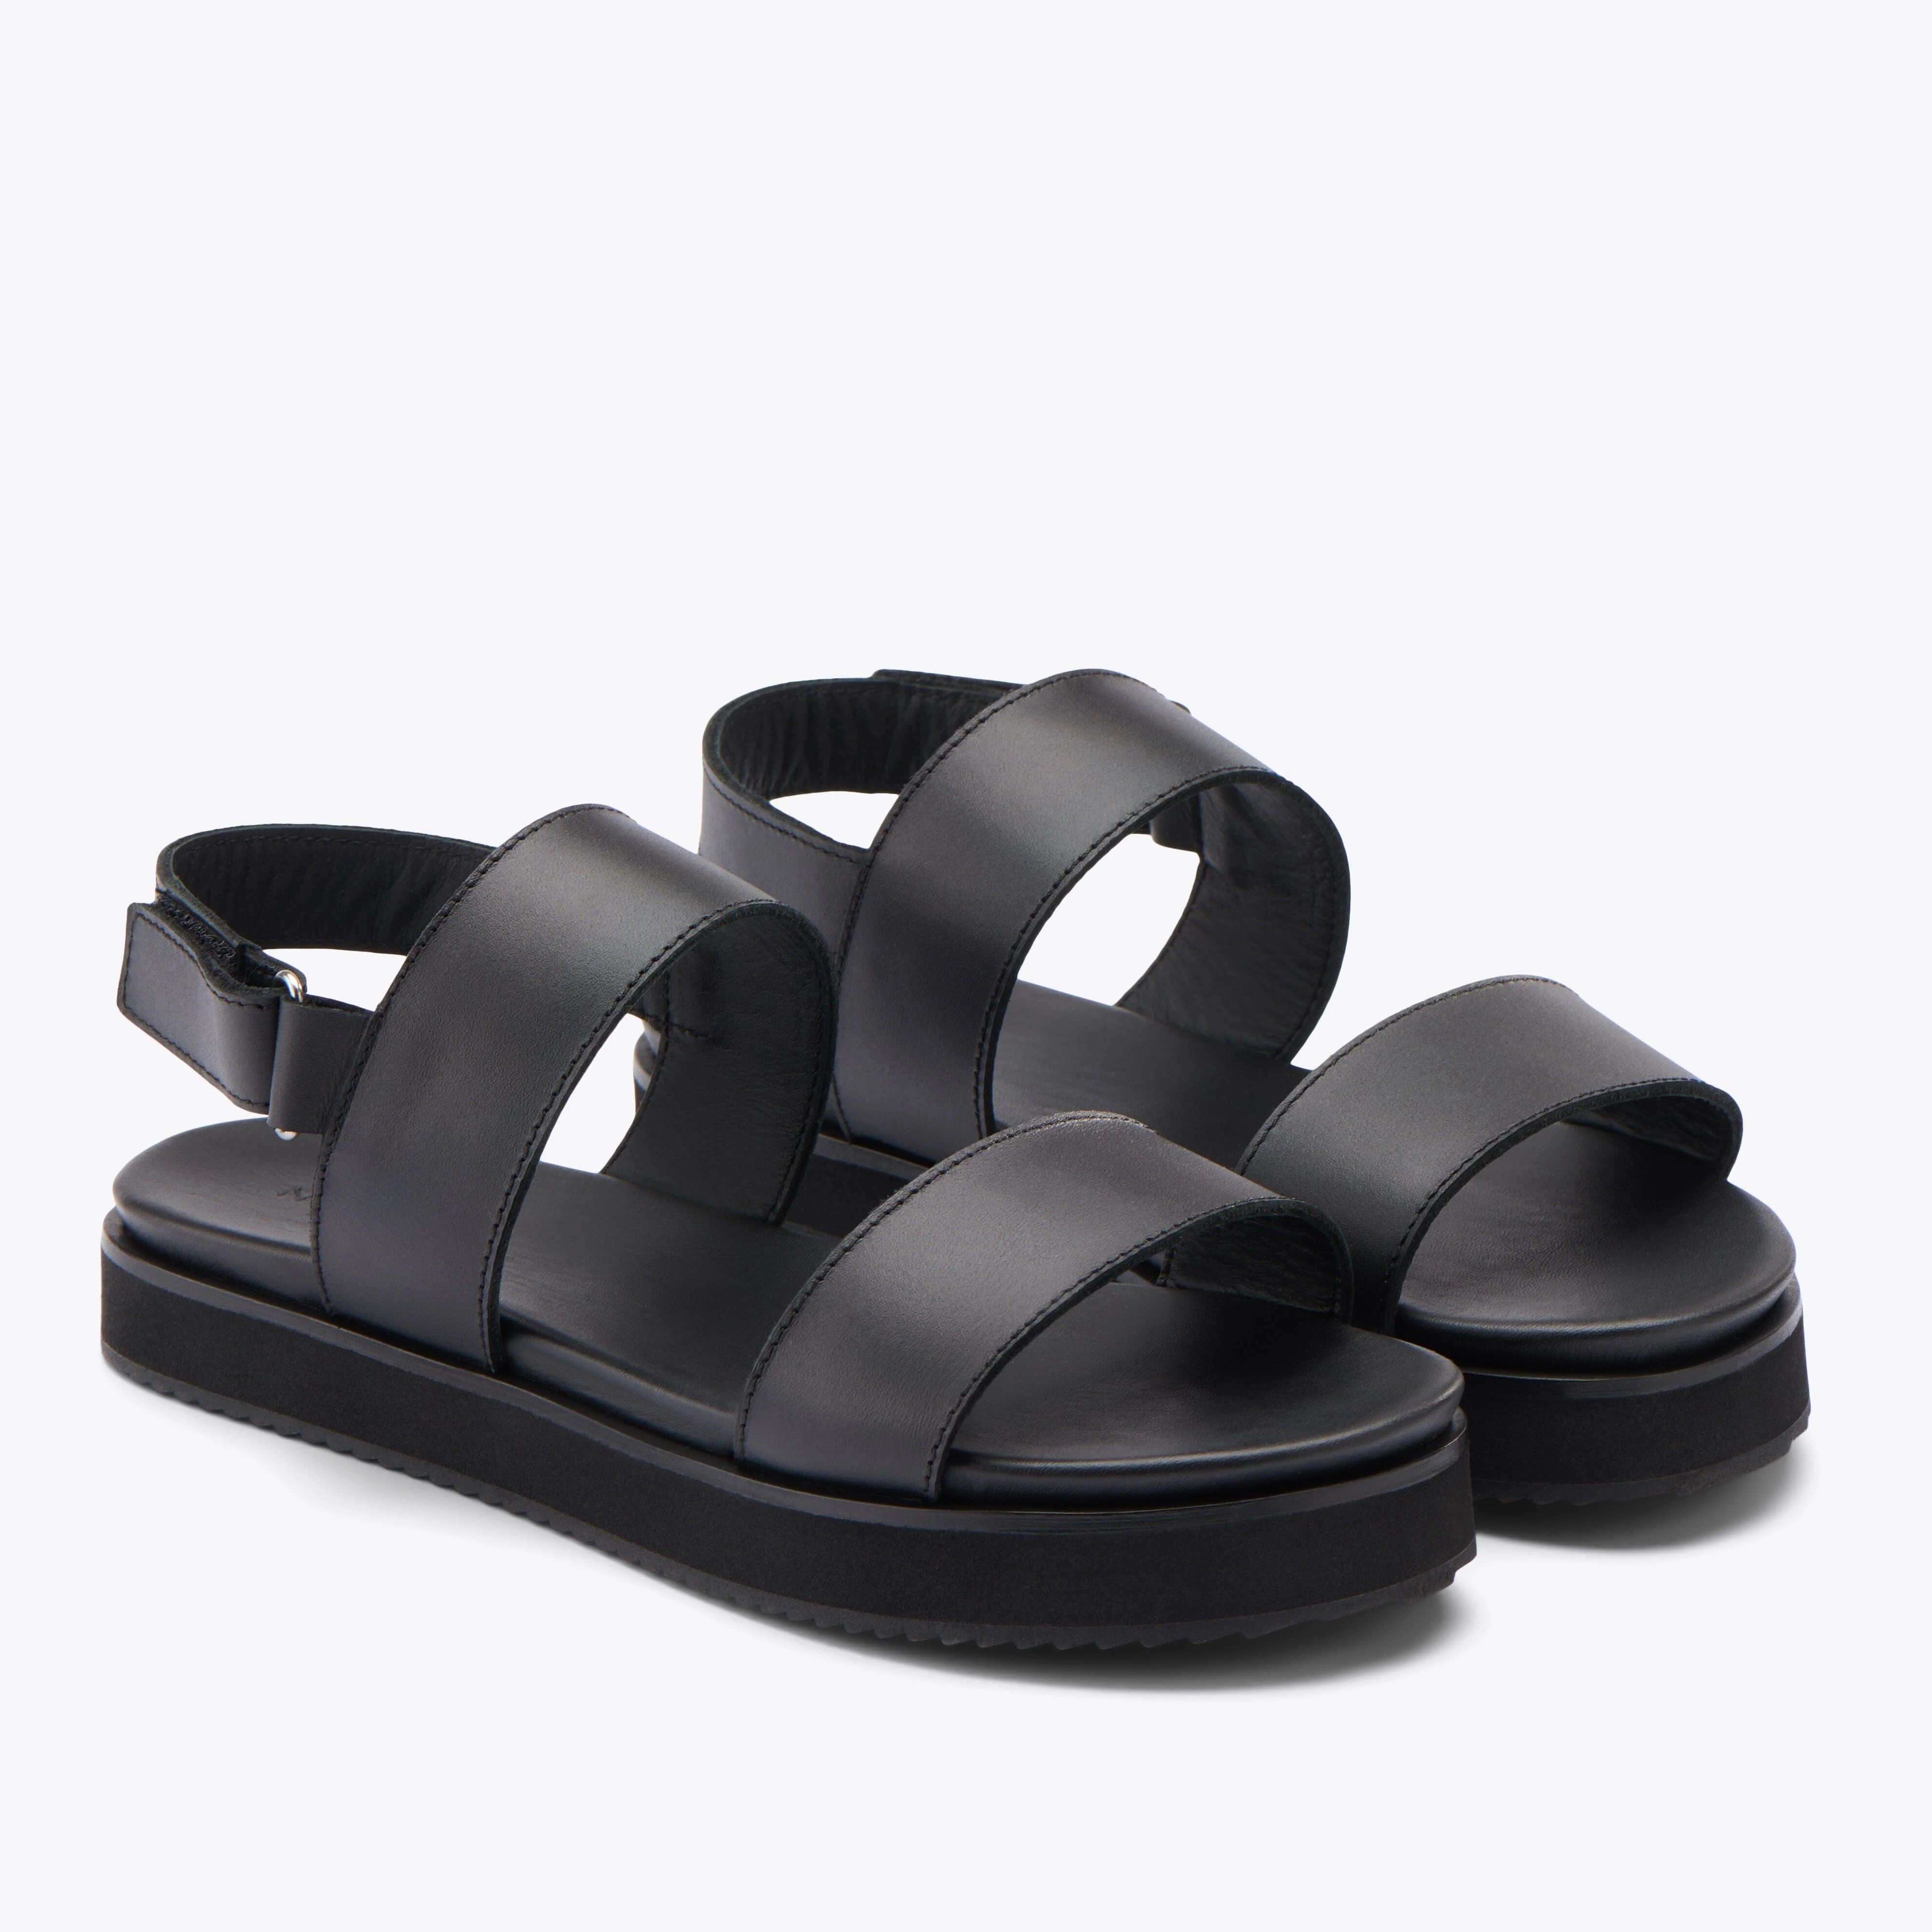 Go-To Flatform Sandal Black/Black | Nisolo